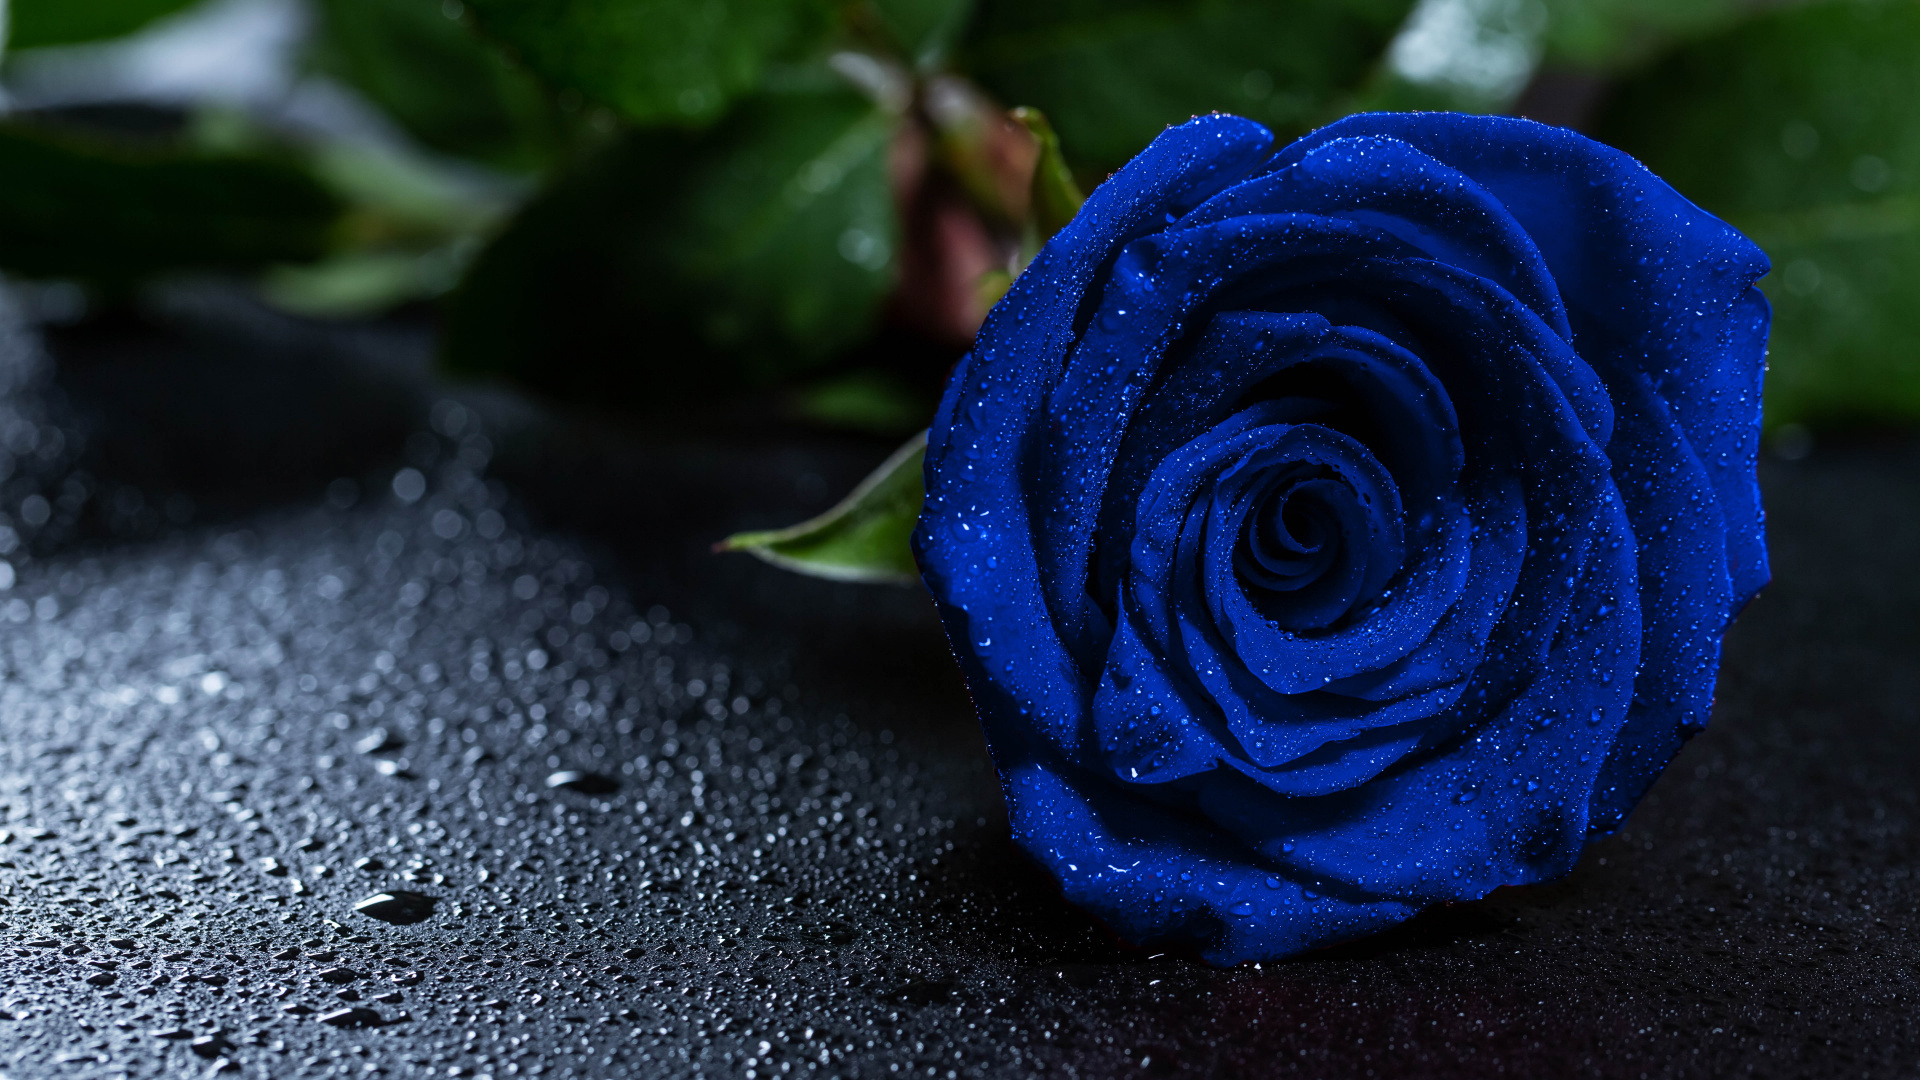 蓝玫瑰, 显花植物, 玫瑰花园, 钴蓝色的, 玫瑰家庭 壁纸 1920x1080 允许